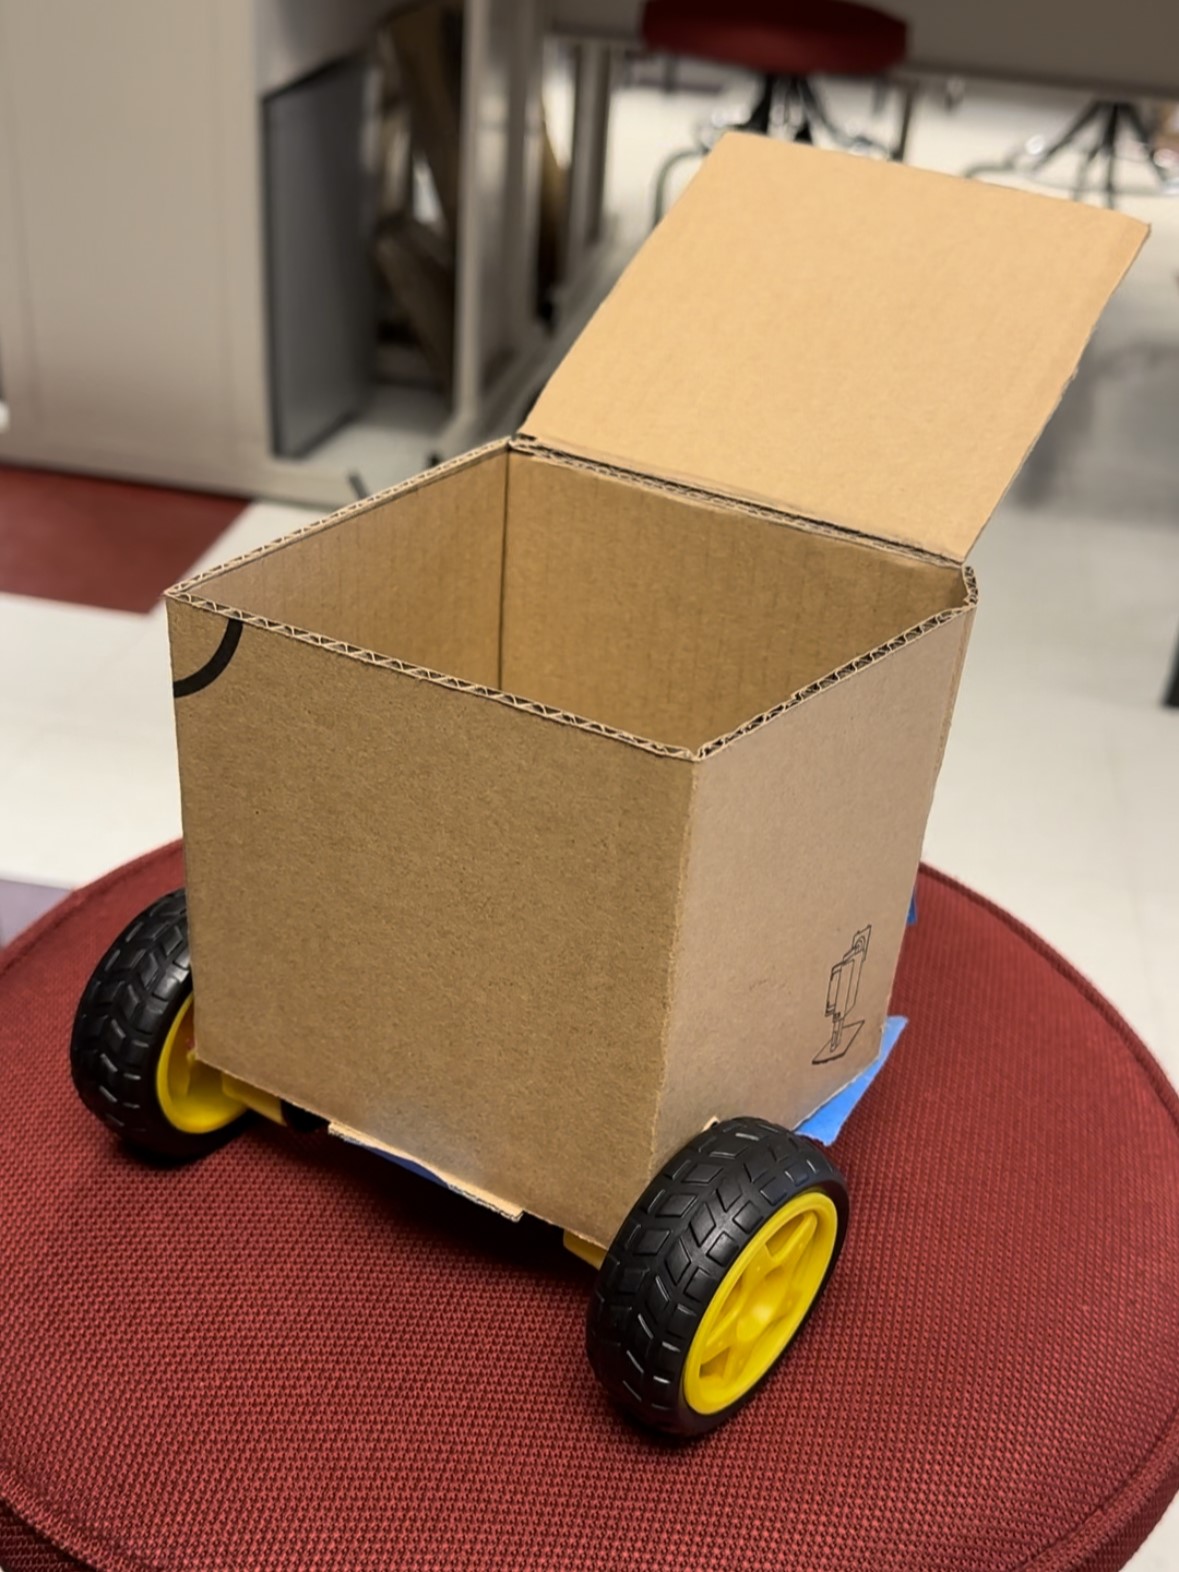 Figure 5: Second Cardboard Prototype